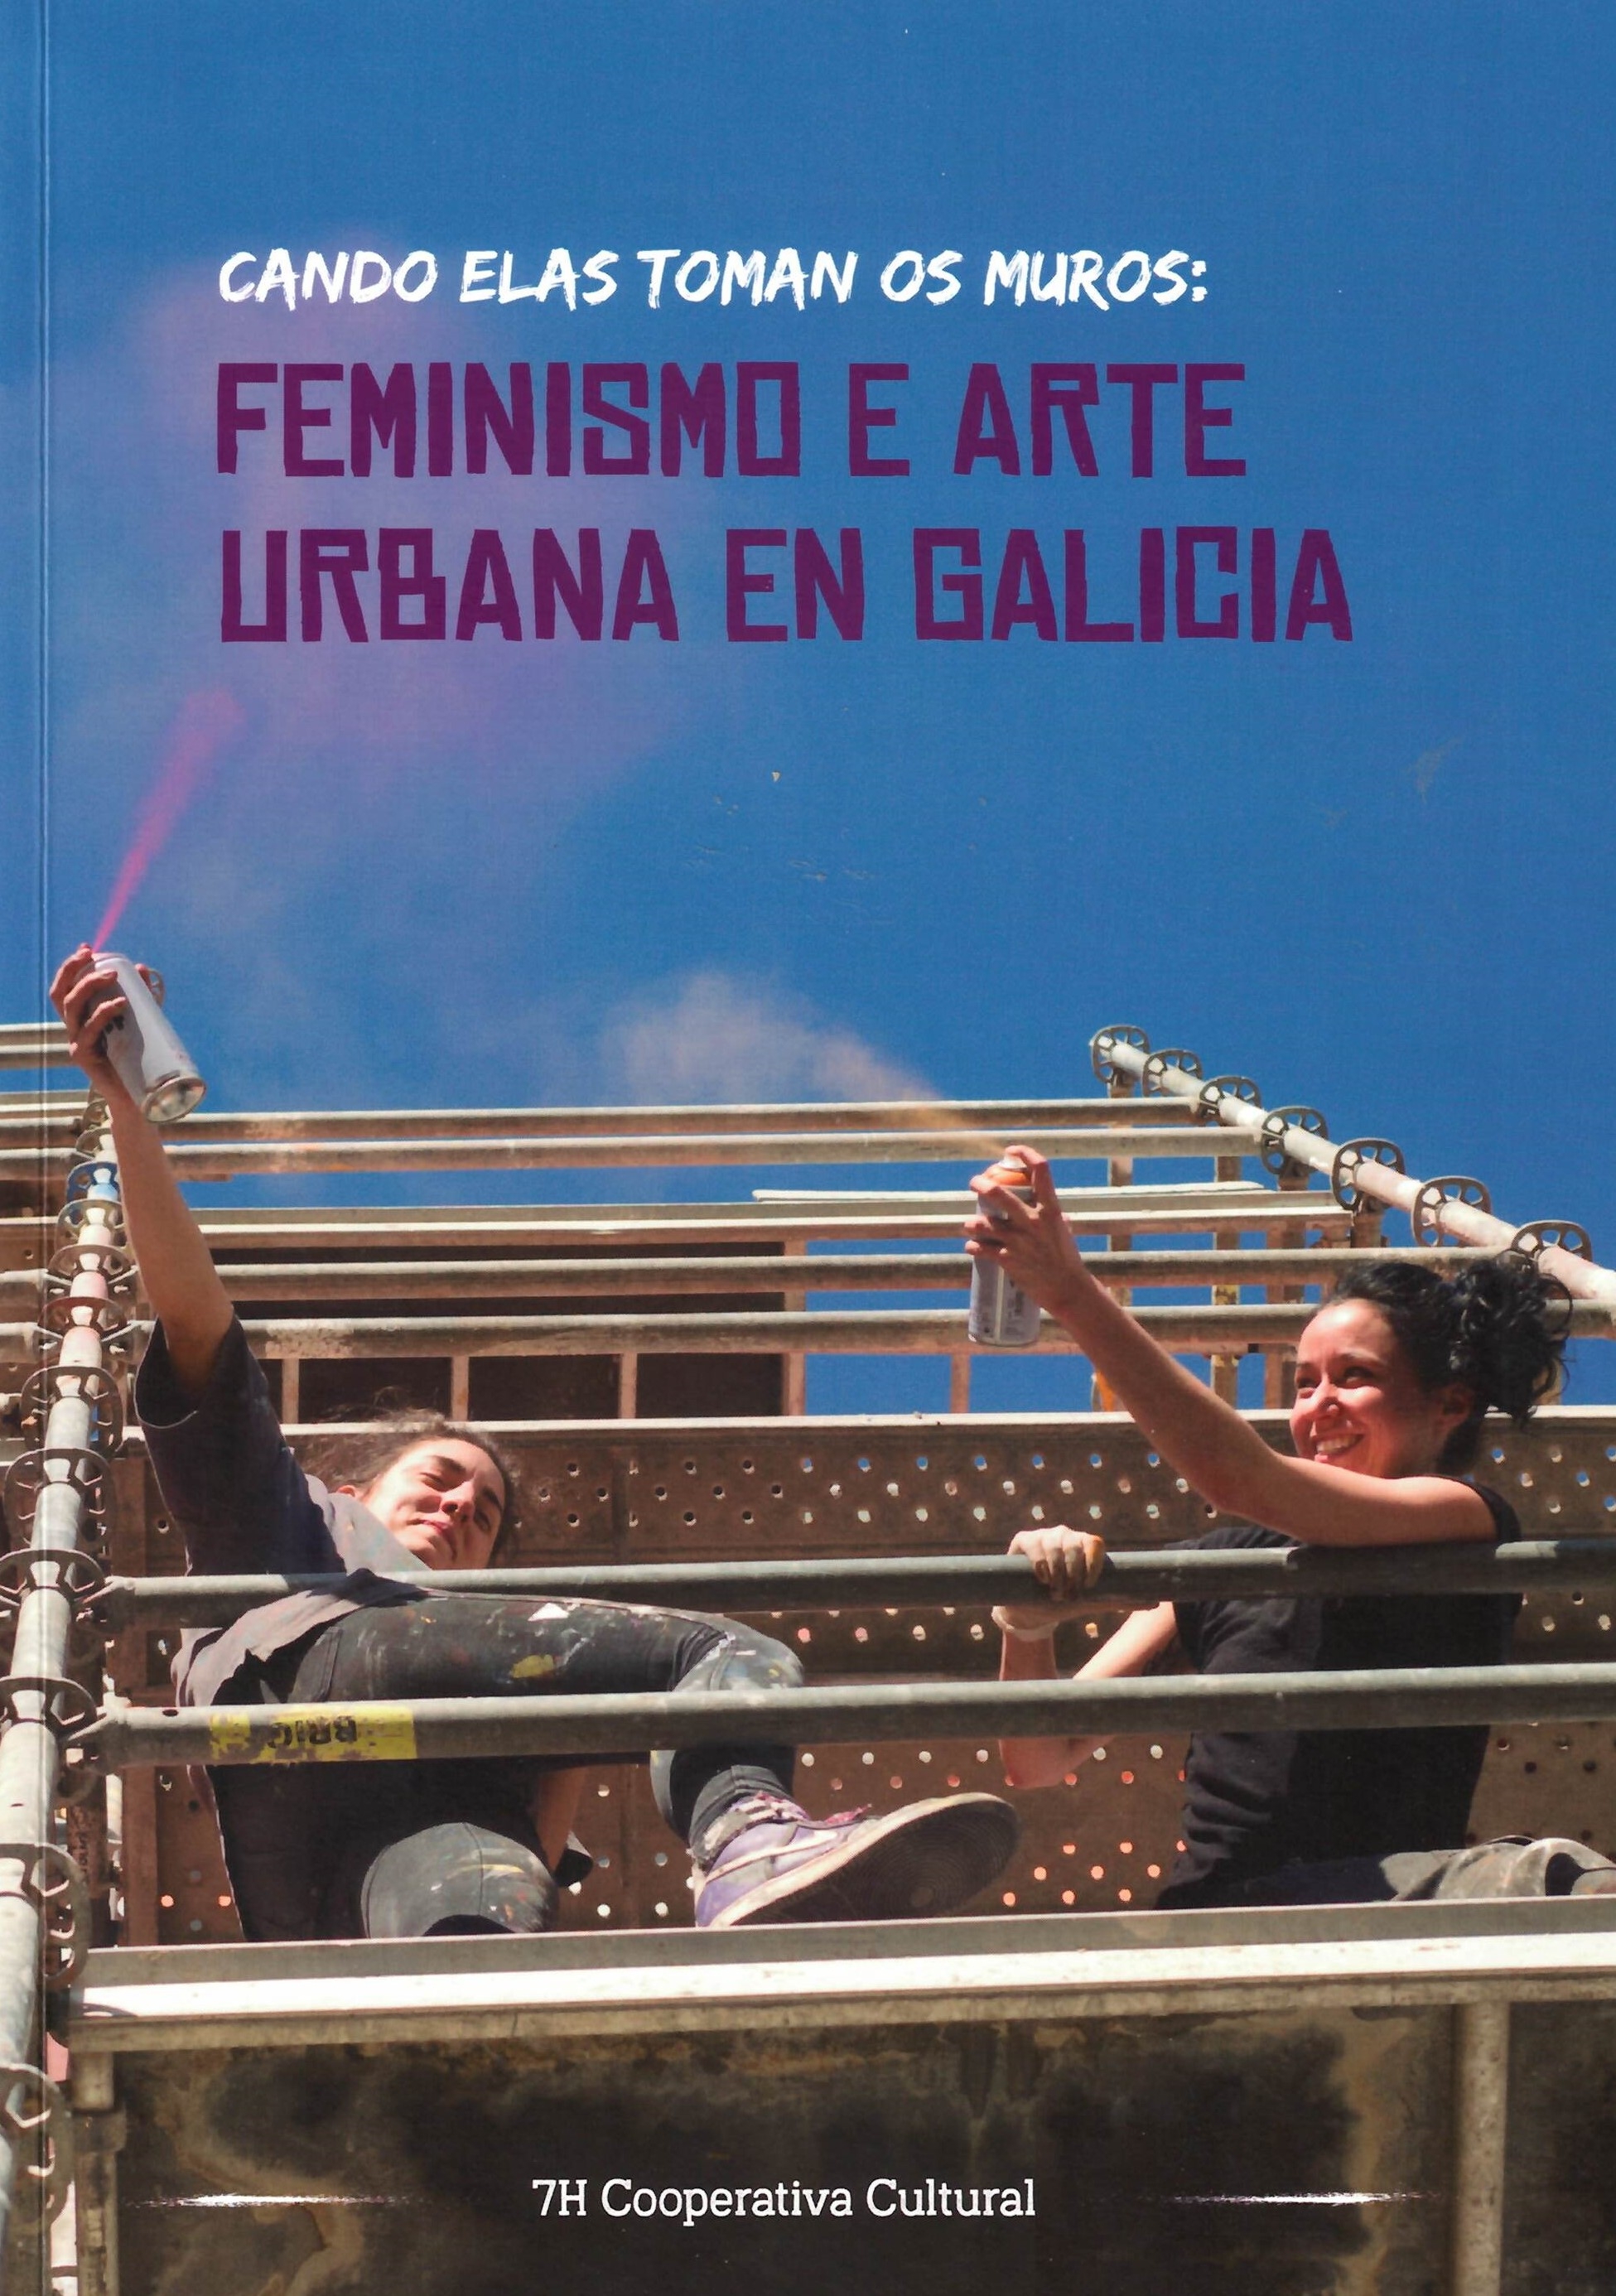 CANDO ELAS TOMAN OS MUROS: Feminismo e Arte Urbana en Galicia